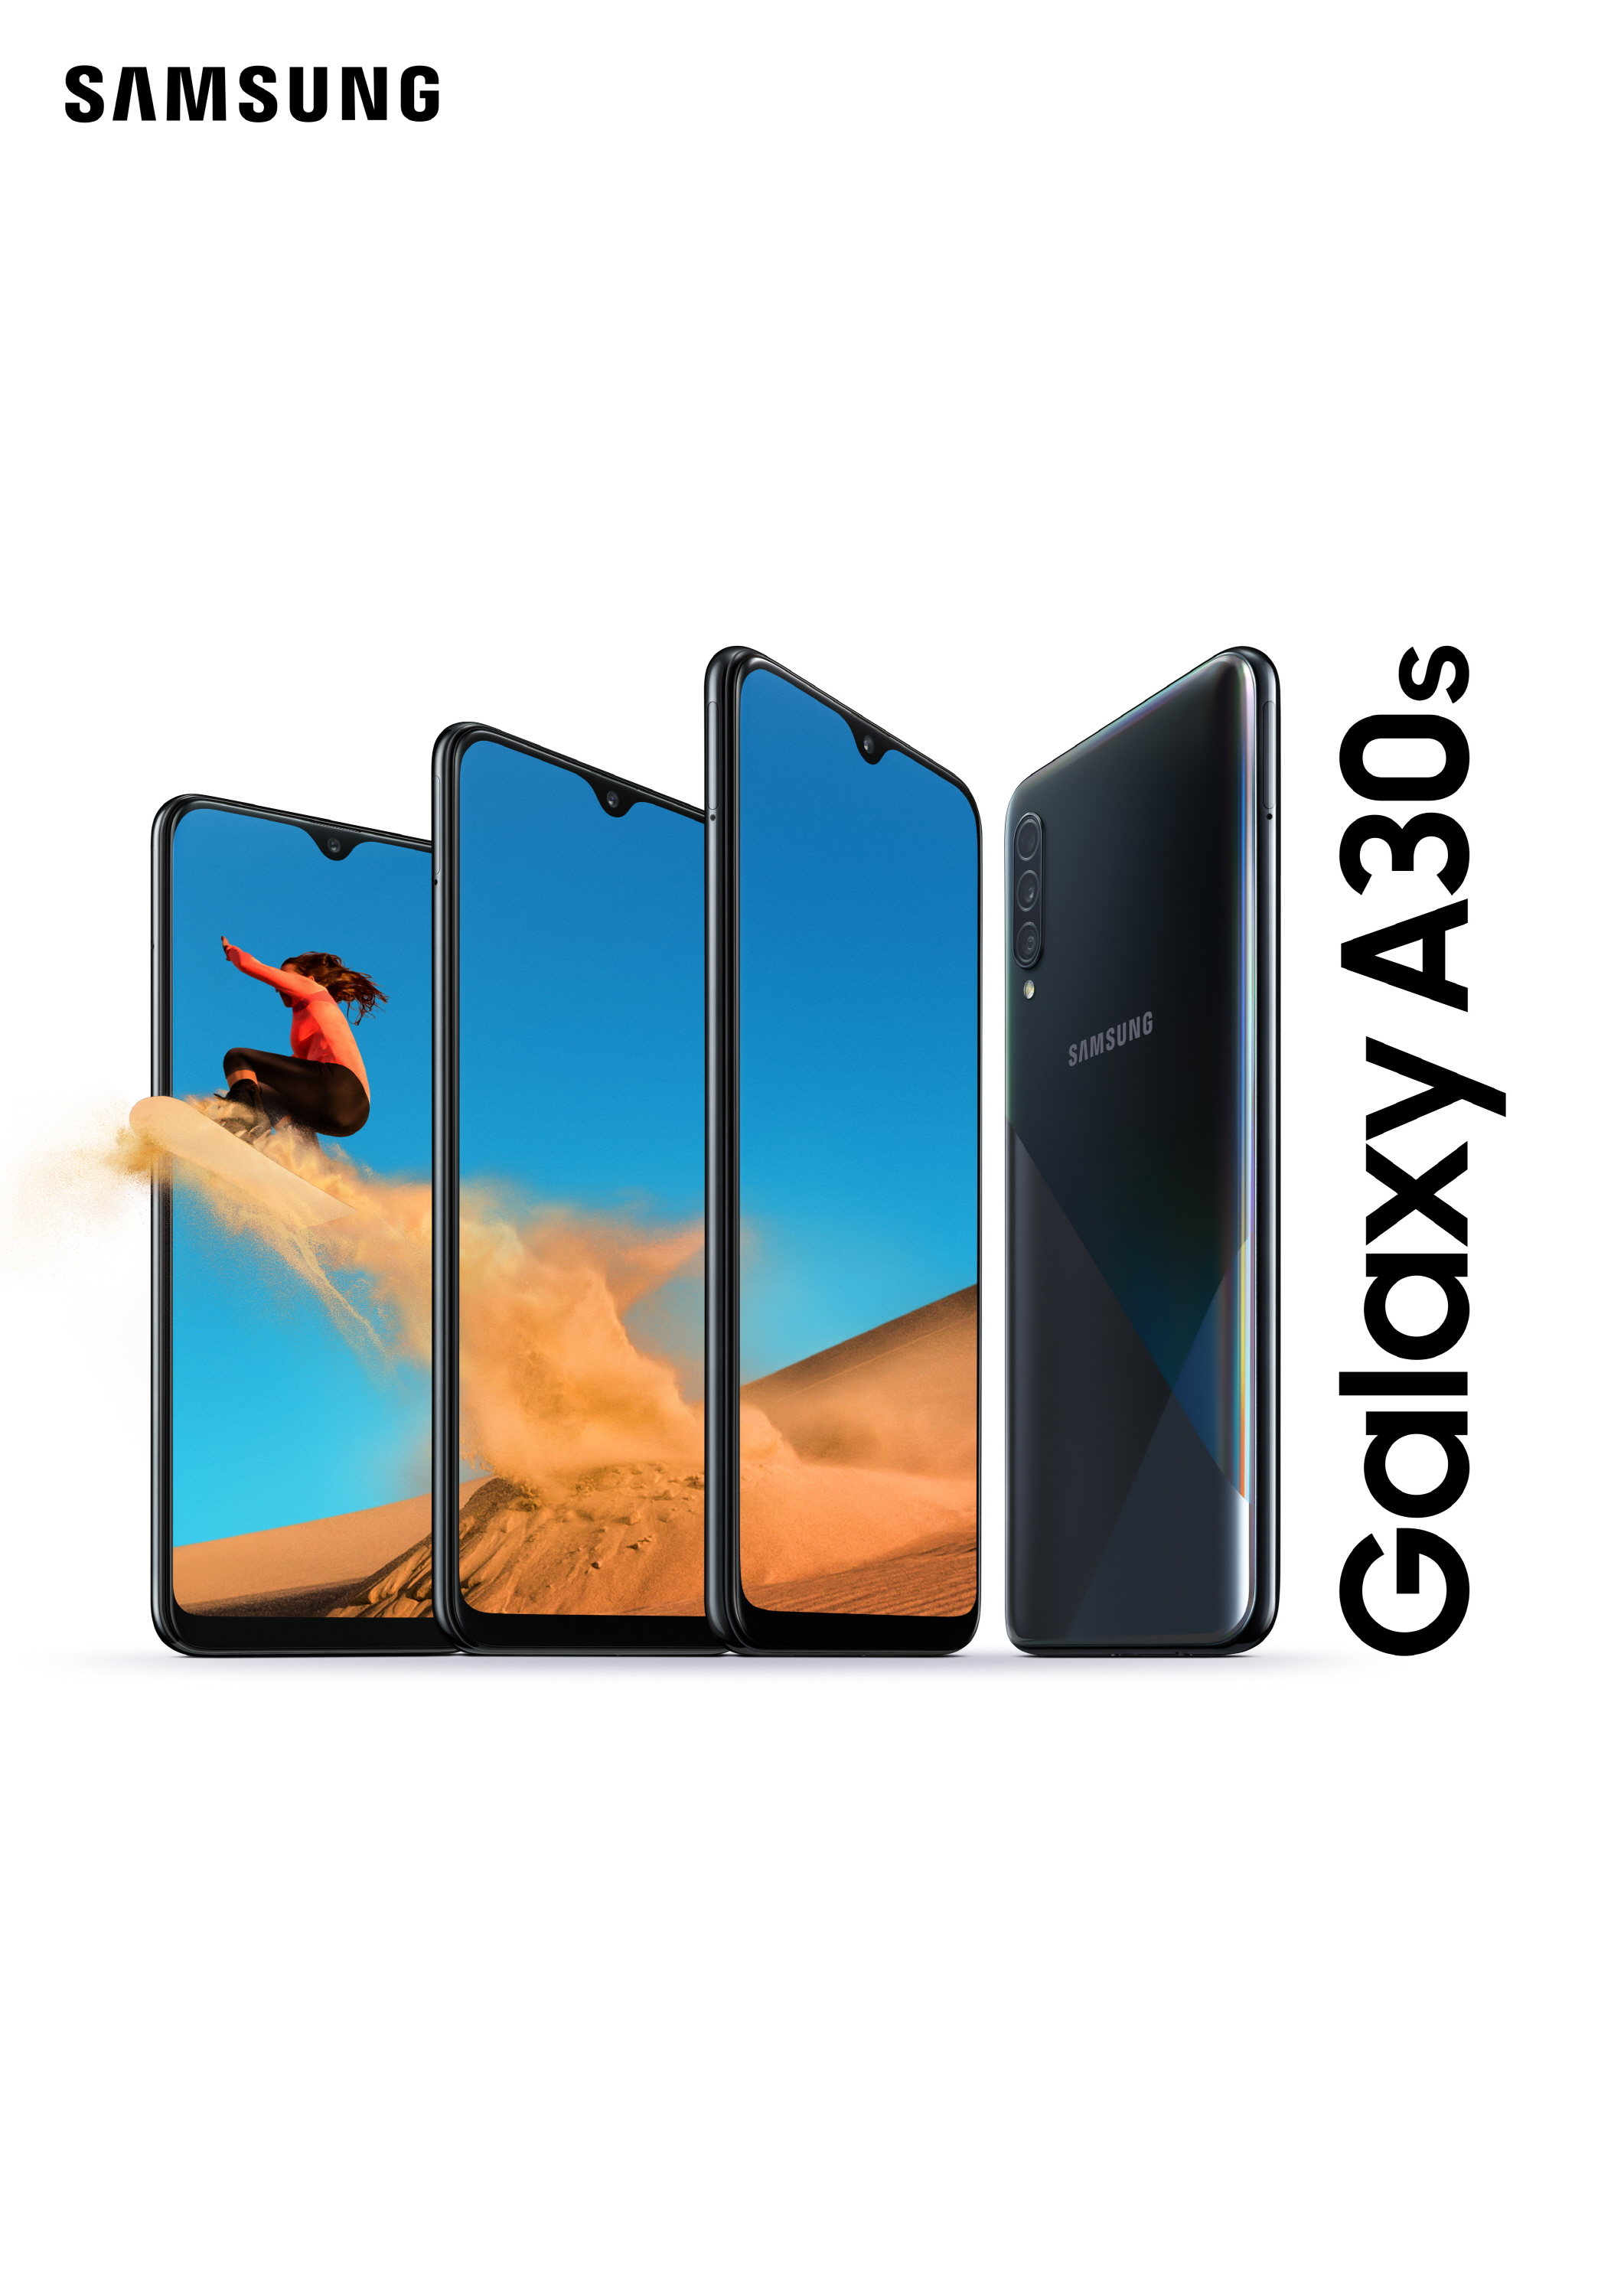 Specifiche tecniche del Samsung Galaxy A30s